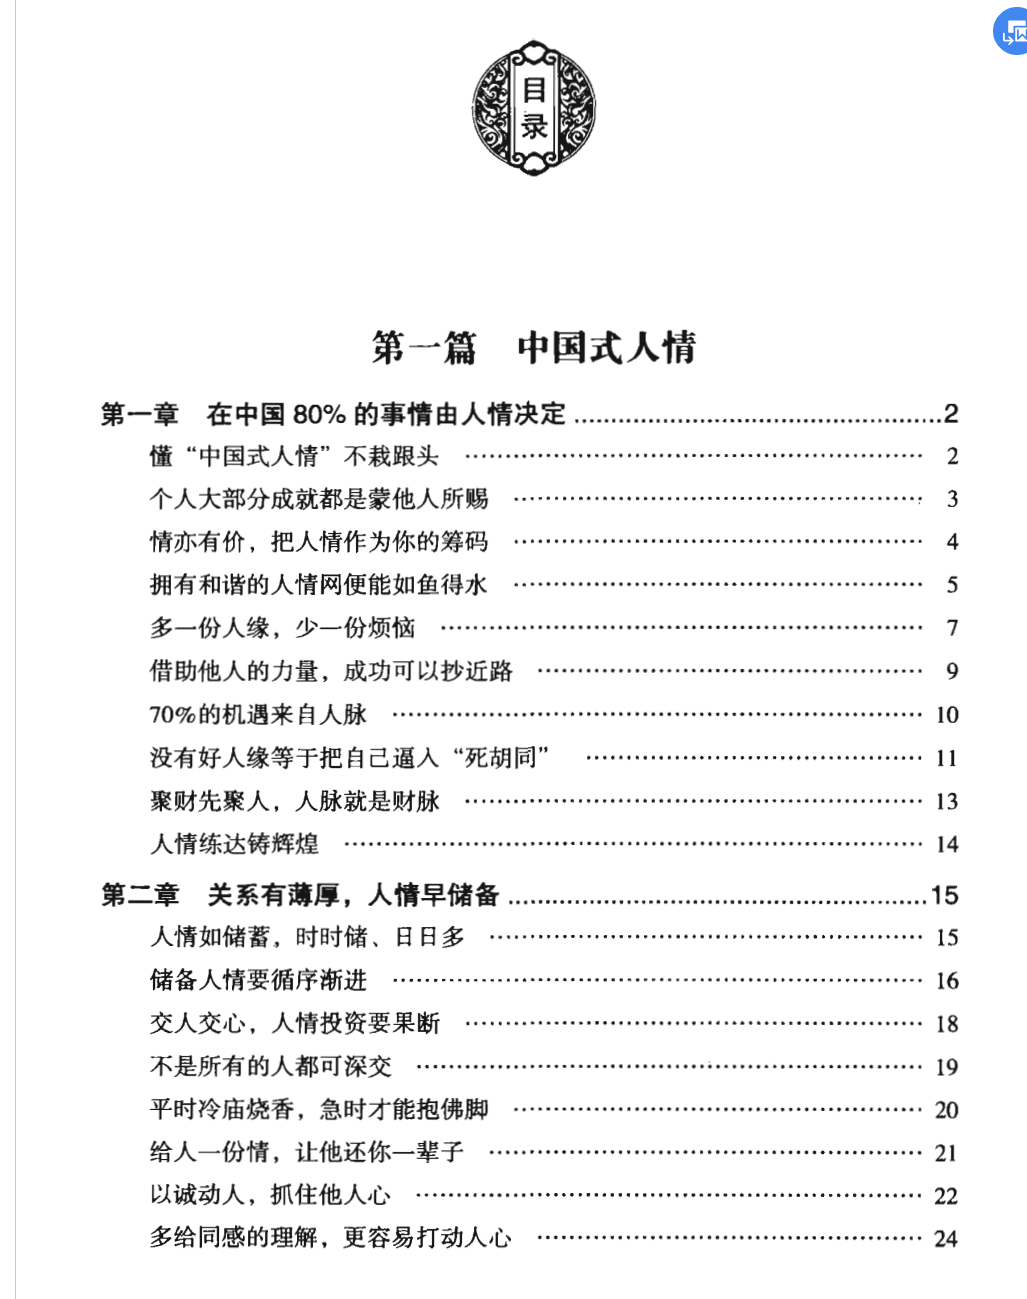 《中国式应酬》武敬敏无水印.pdf「百度网盘下载」PDF 电子书插图2